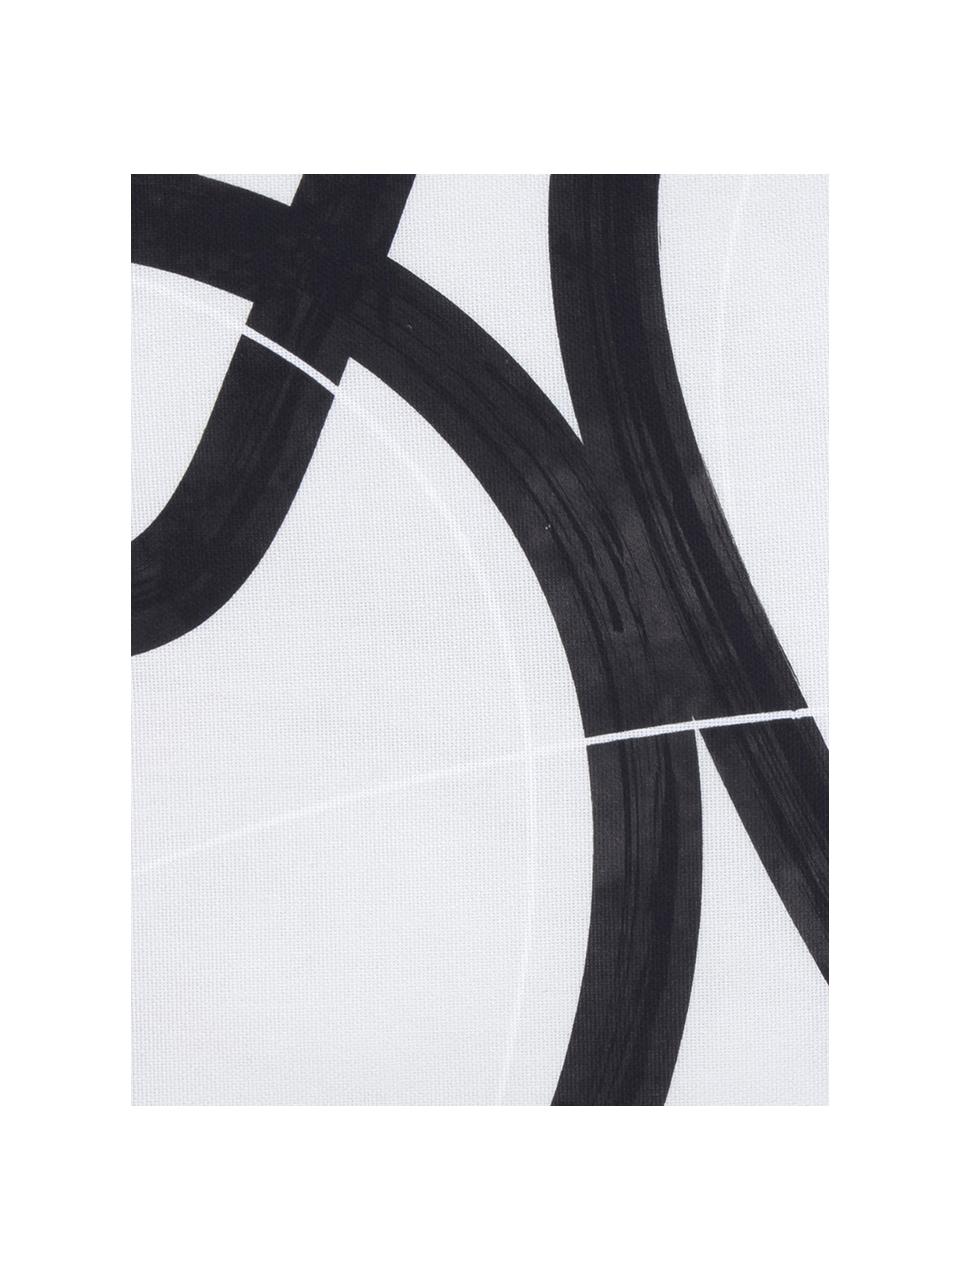 Kussenhoes Elijah met abstracte print, 100% katoen, Beige, zwart, wit, 40 x 40 cm